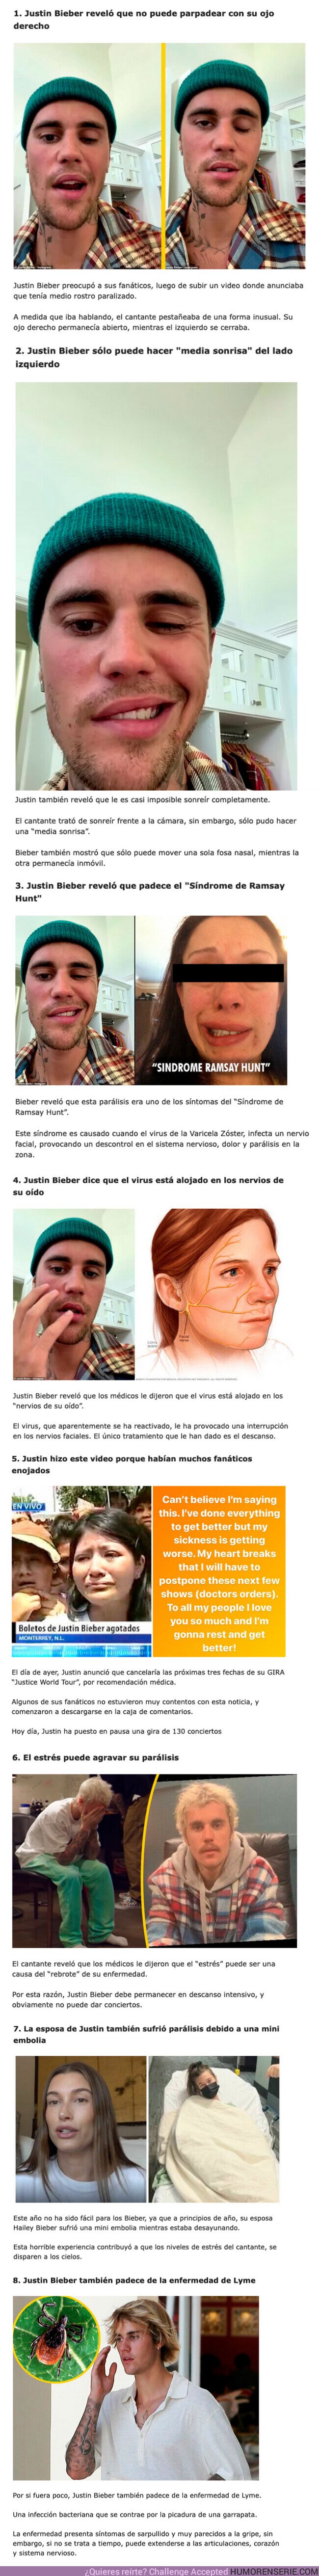 101547 - GALERÍA: Justin Bieber reveló que tiene medio rostro paralizado: 8 cosas que debes saber sobre su enfermedad